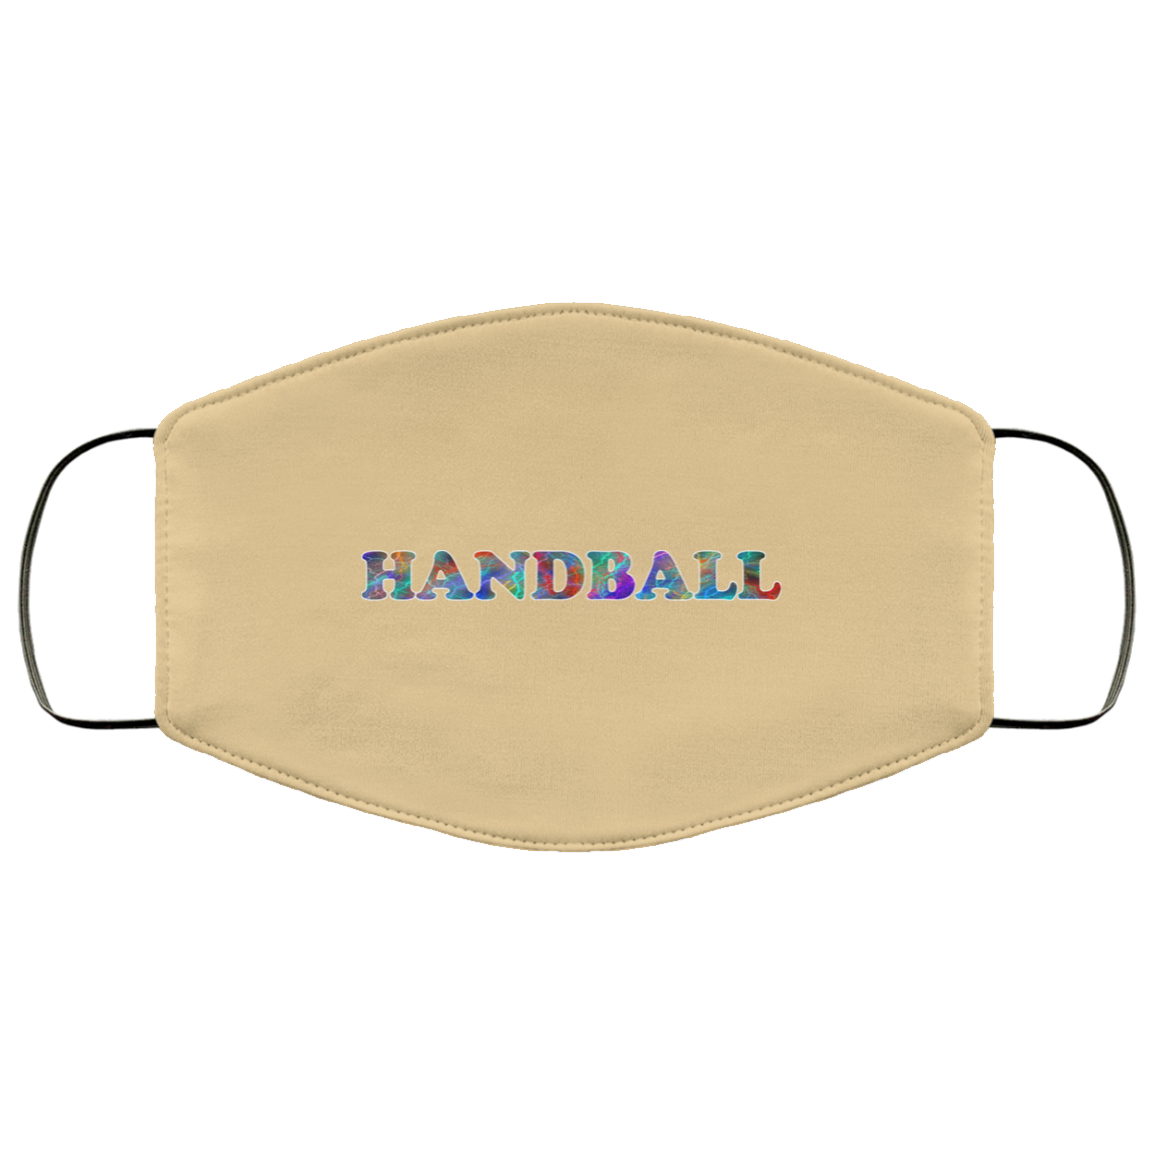 Handball 2 Layer Protective Mask